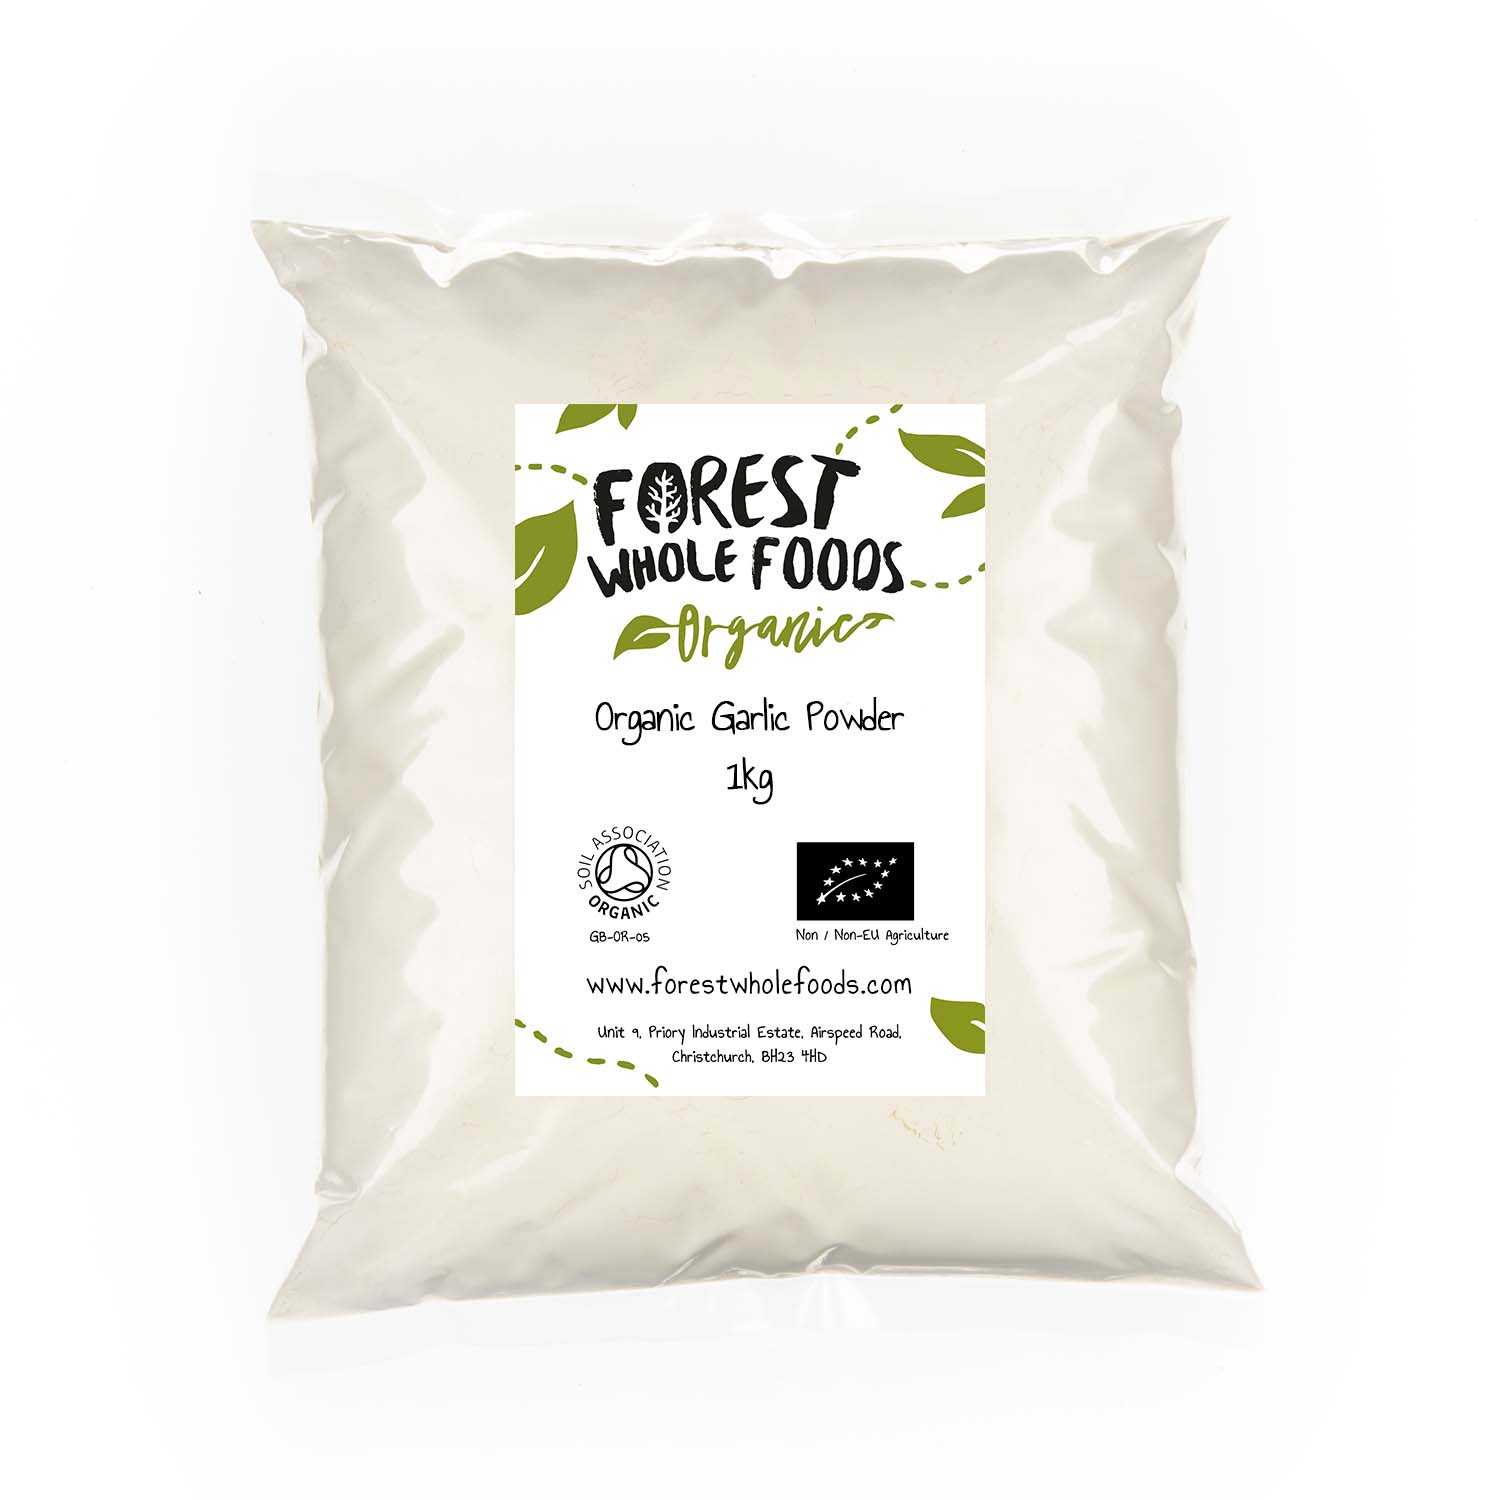 Organic Garlic Powder 1kg